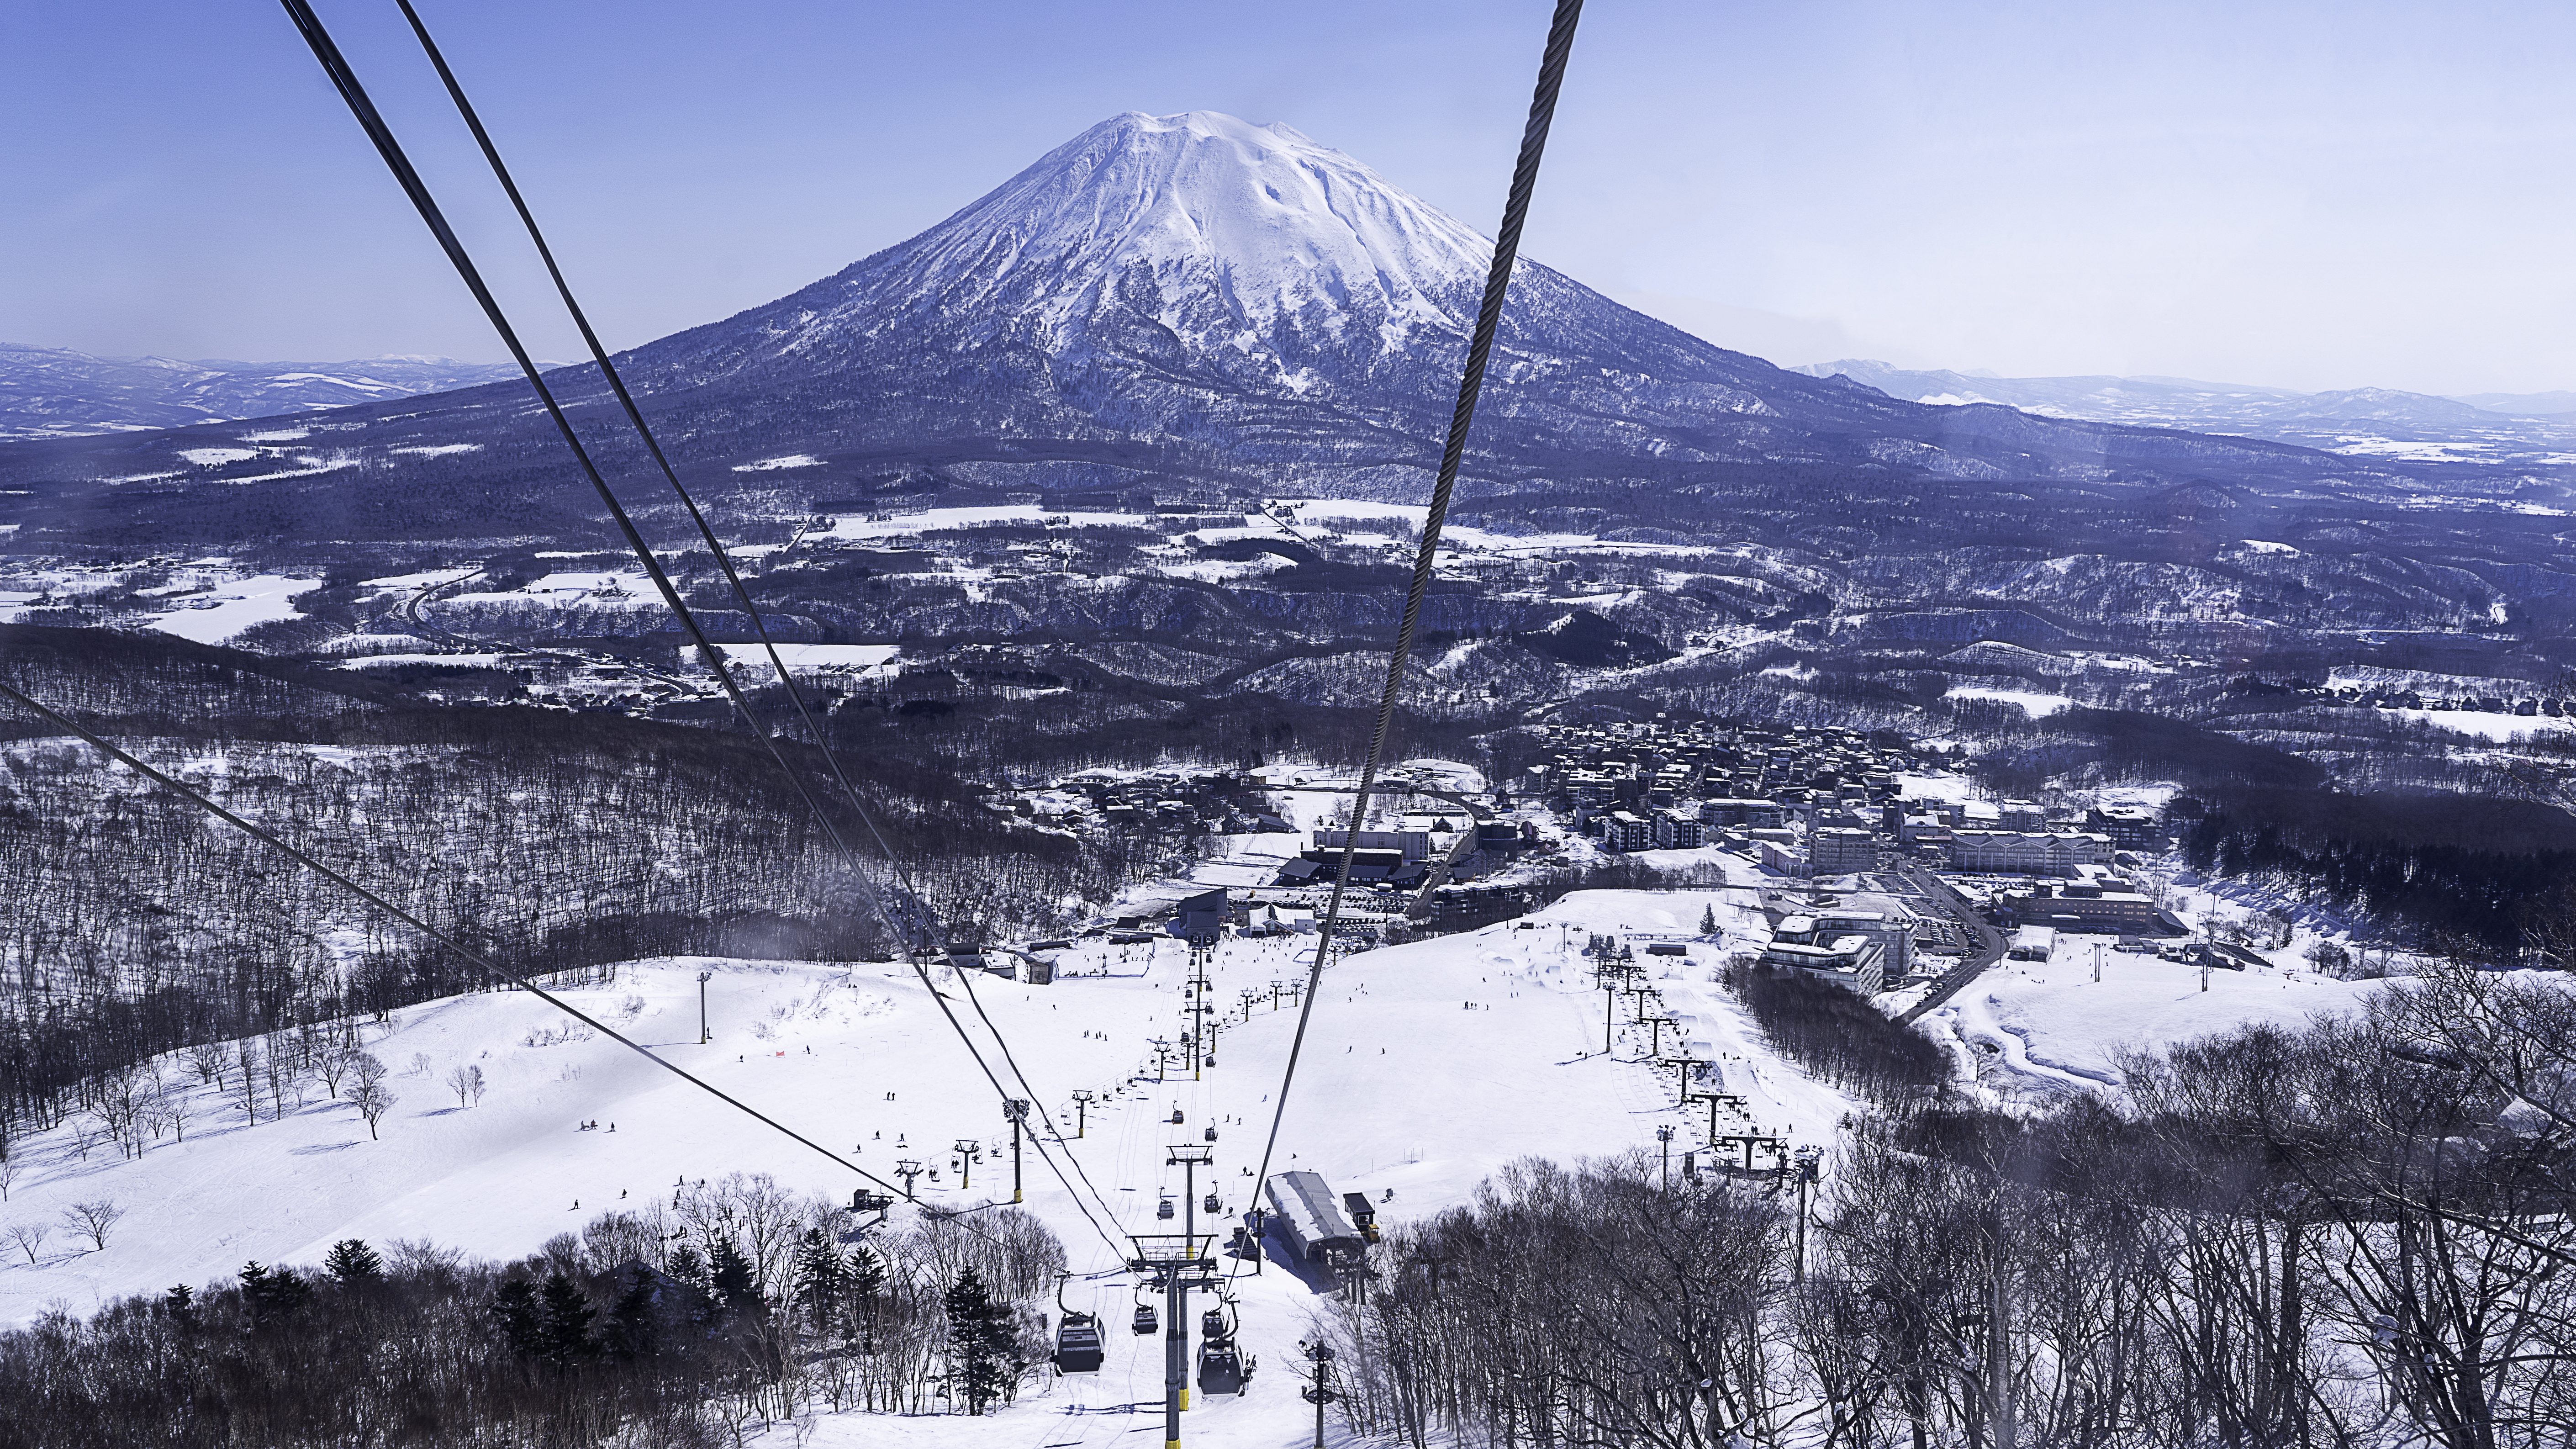 値上げに設備投資　外国人経営者がニセコで進める「日本のスキー場とは真逆の戦略」 | インフラ老朽化で衰退する日本のスキー場と対照的